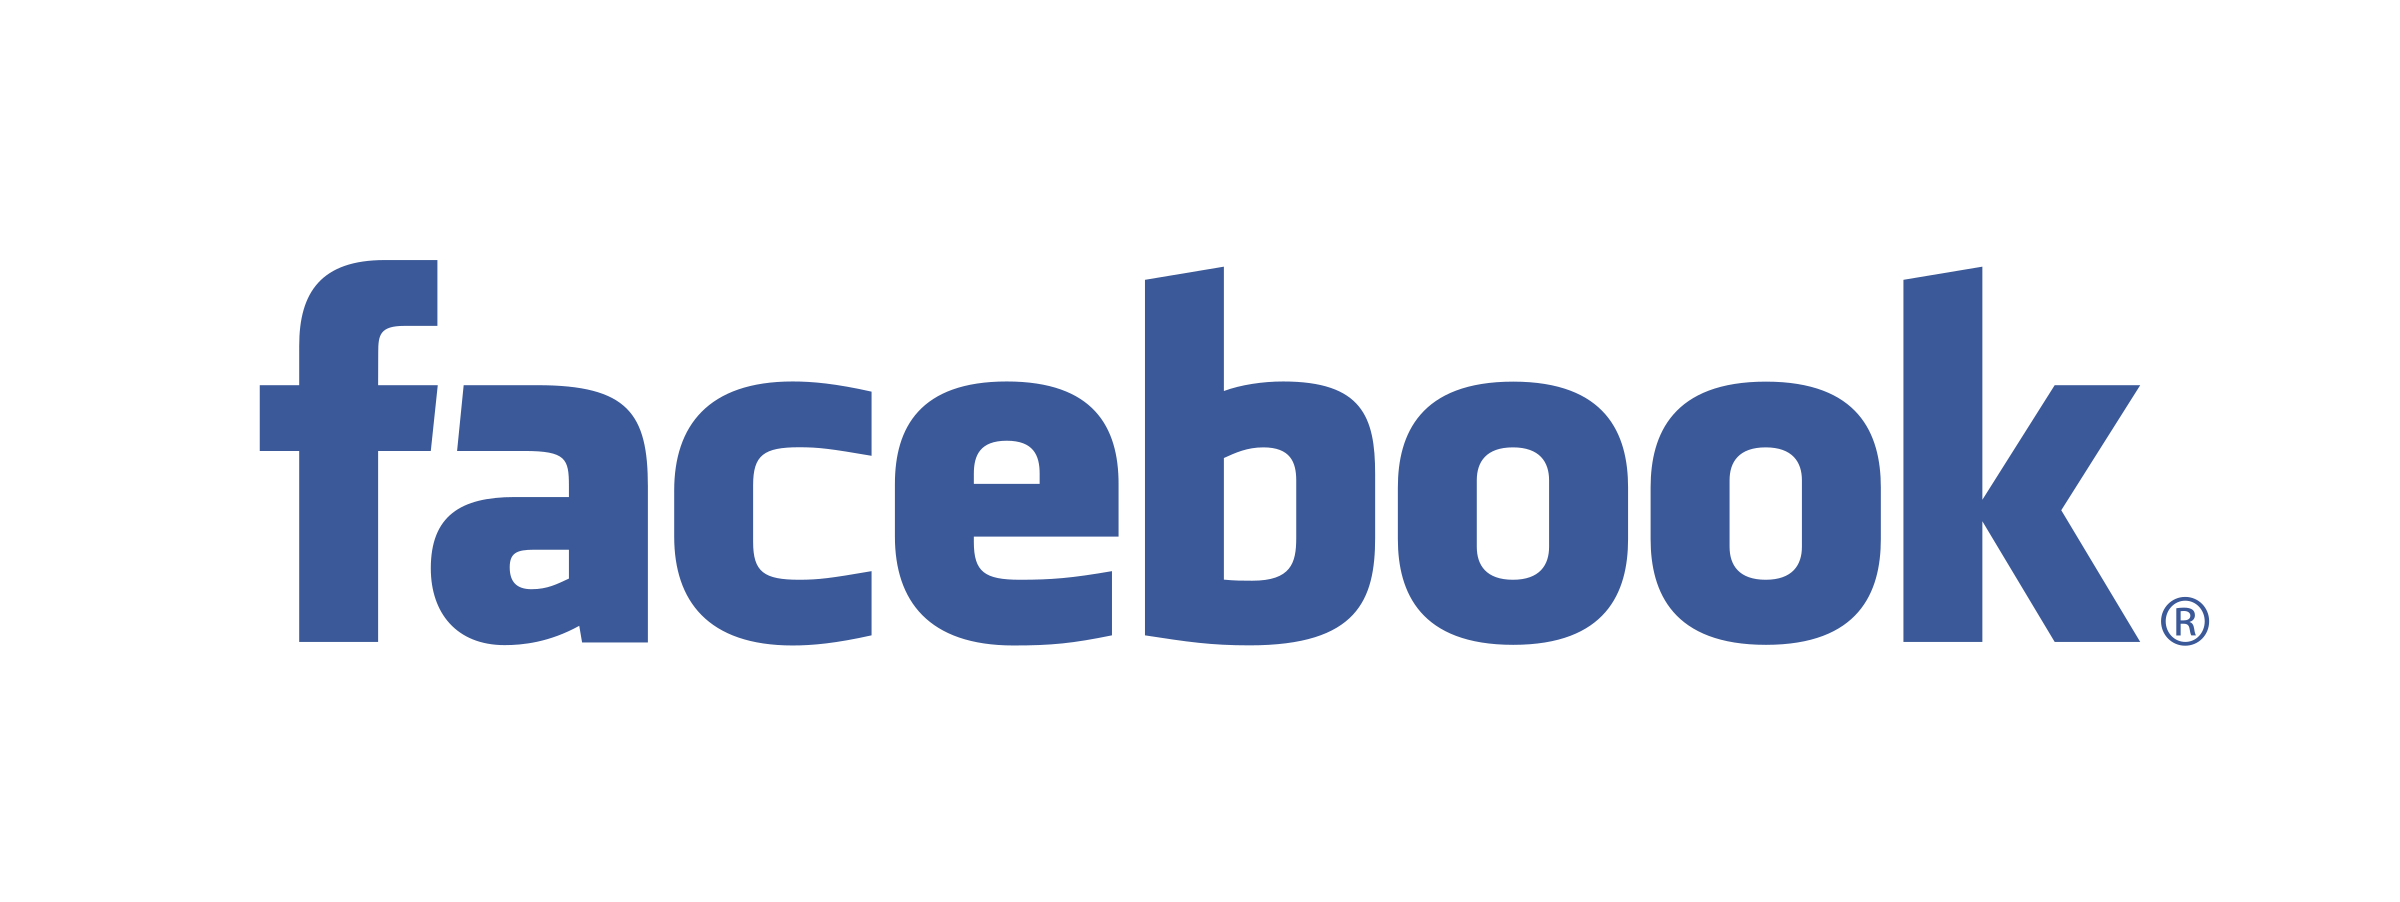 Facebook Logo PNG Images Transparent Facebook Logo Image Download  PNGitem